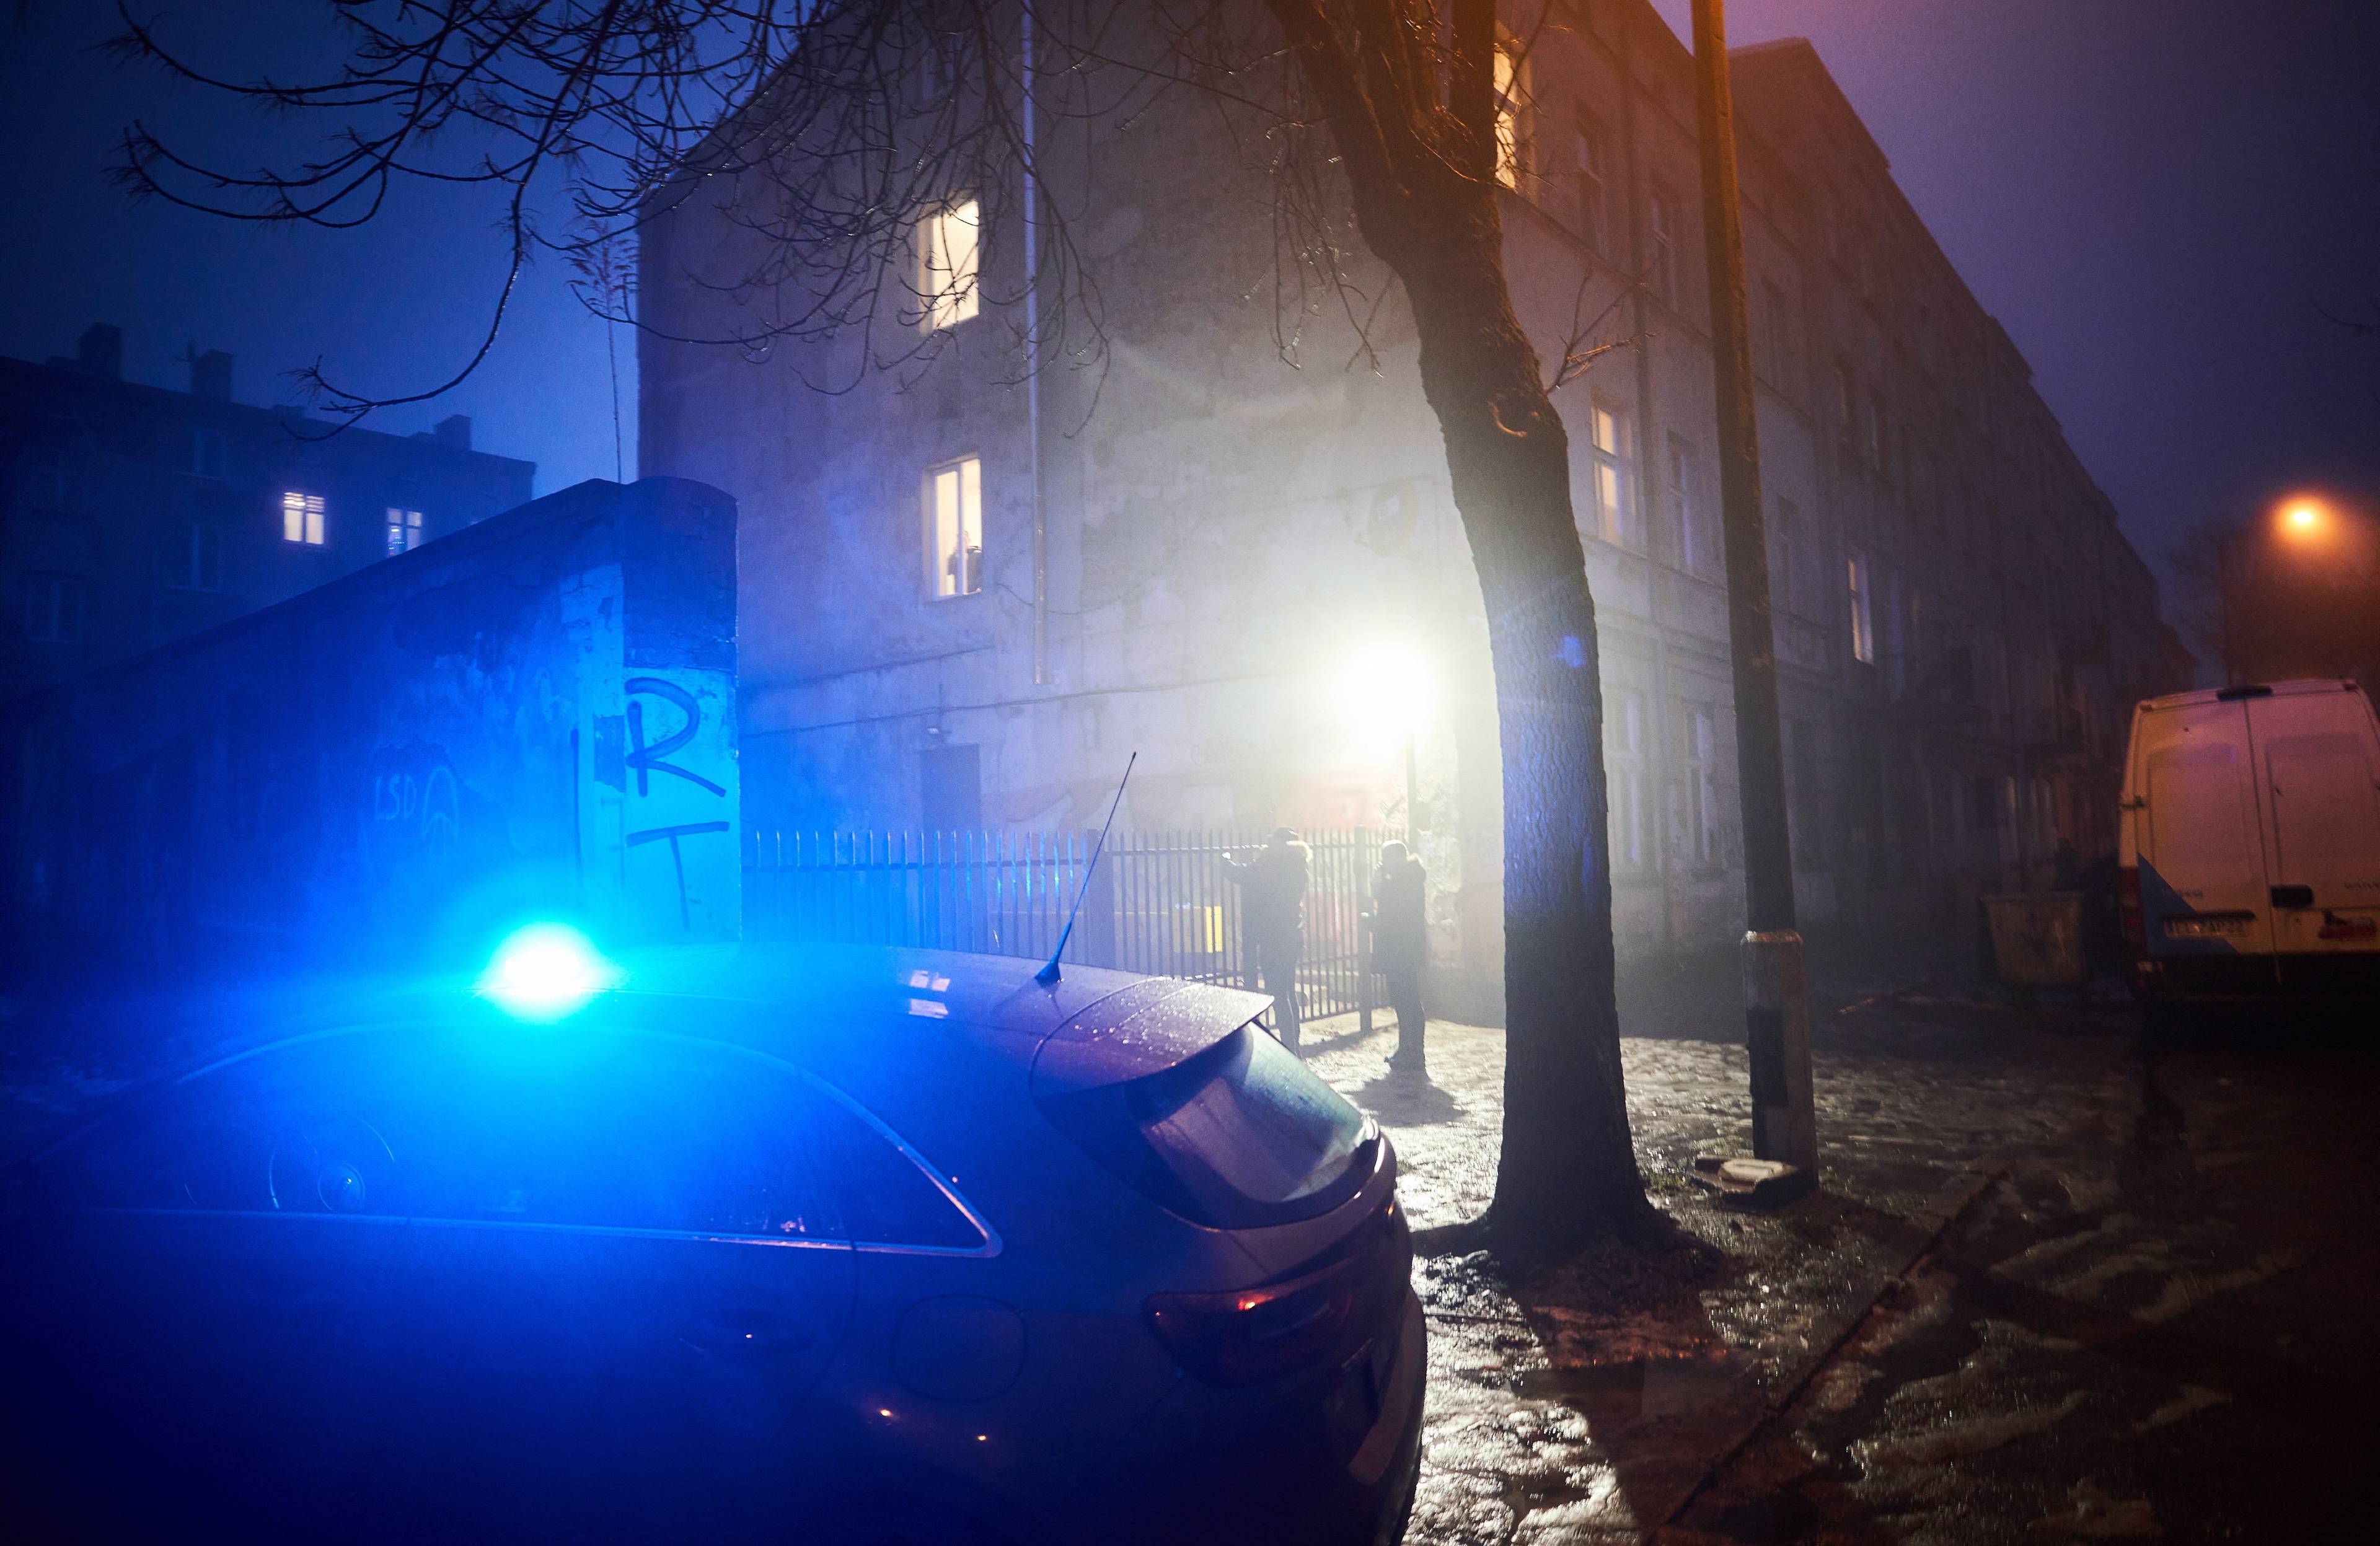 Samochód policyjny z intensywnie niebieskim światłem pod domem o zmierzchu